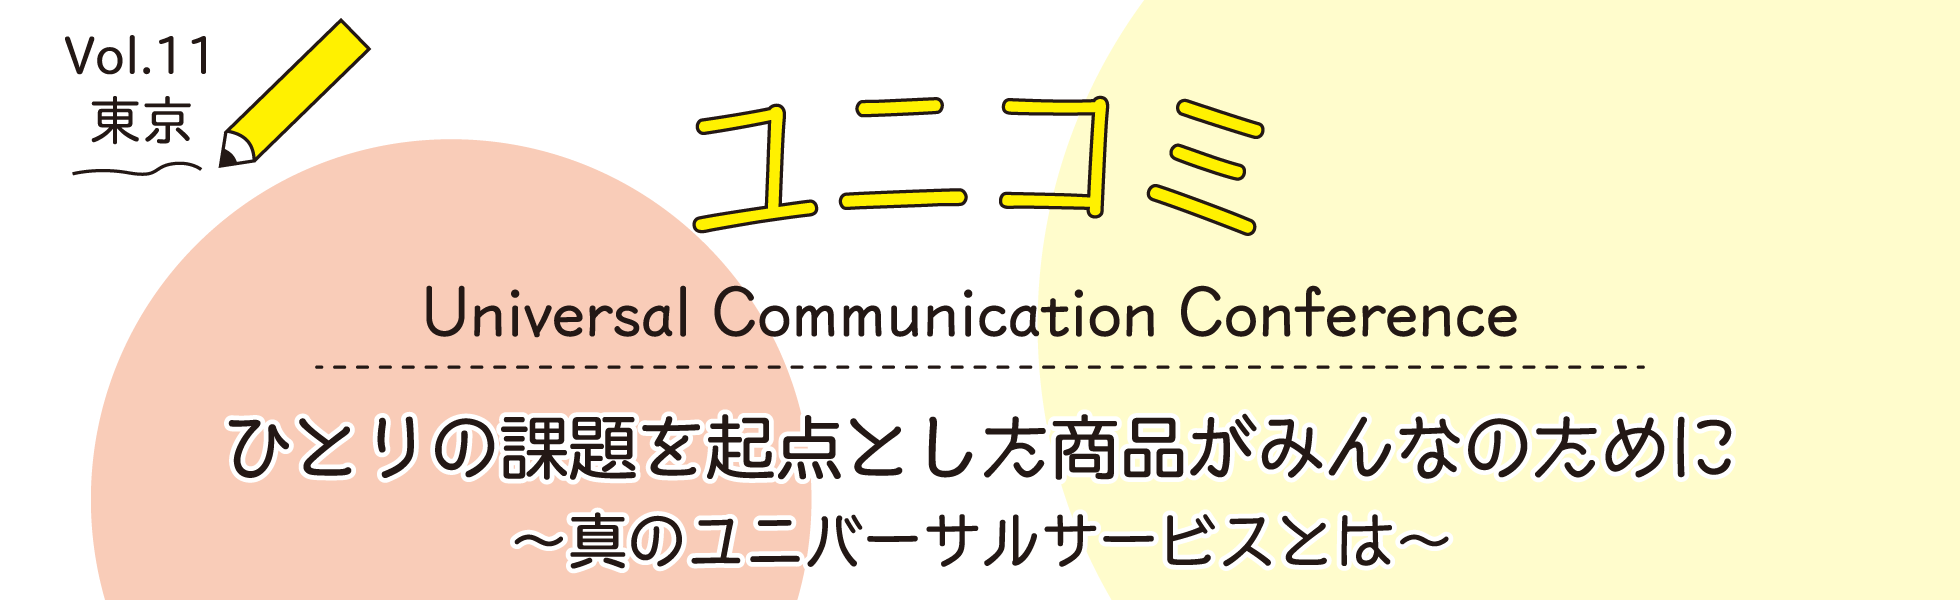 ユニバーサル・コミュニケーション・カンファレンス